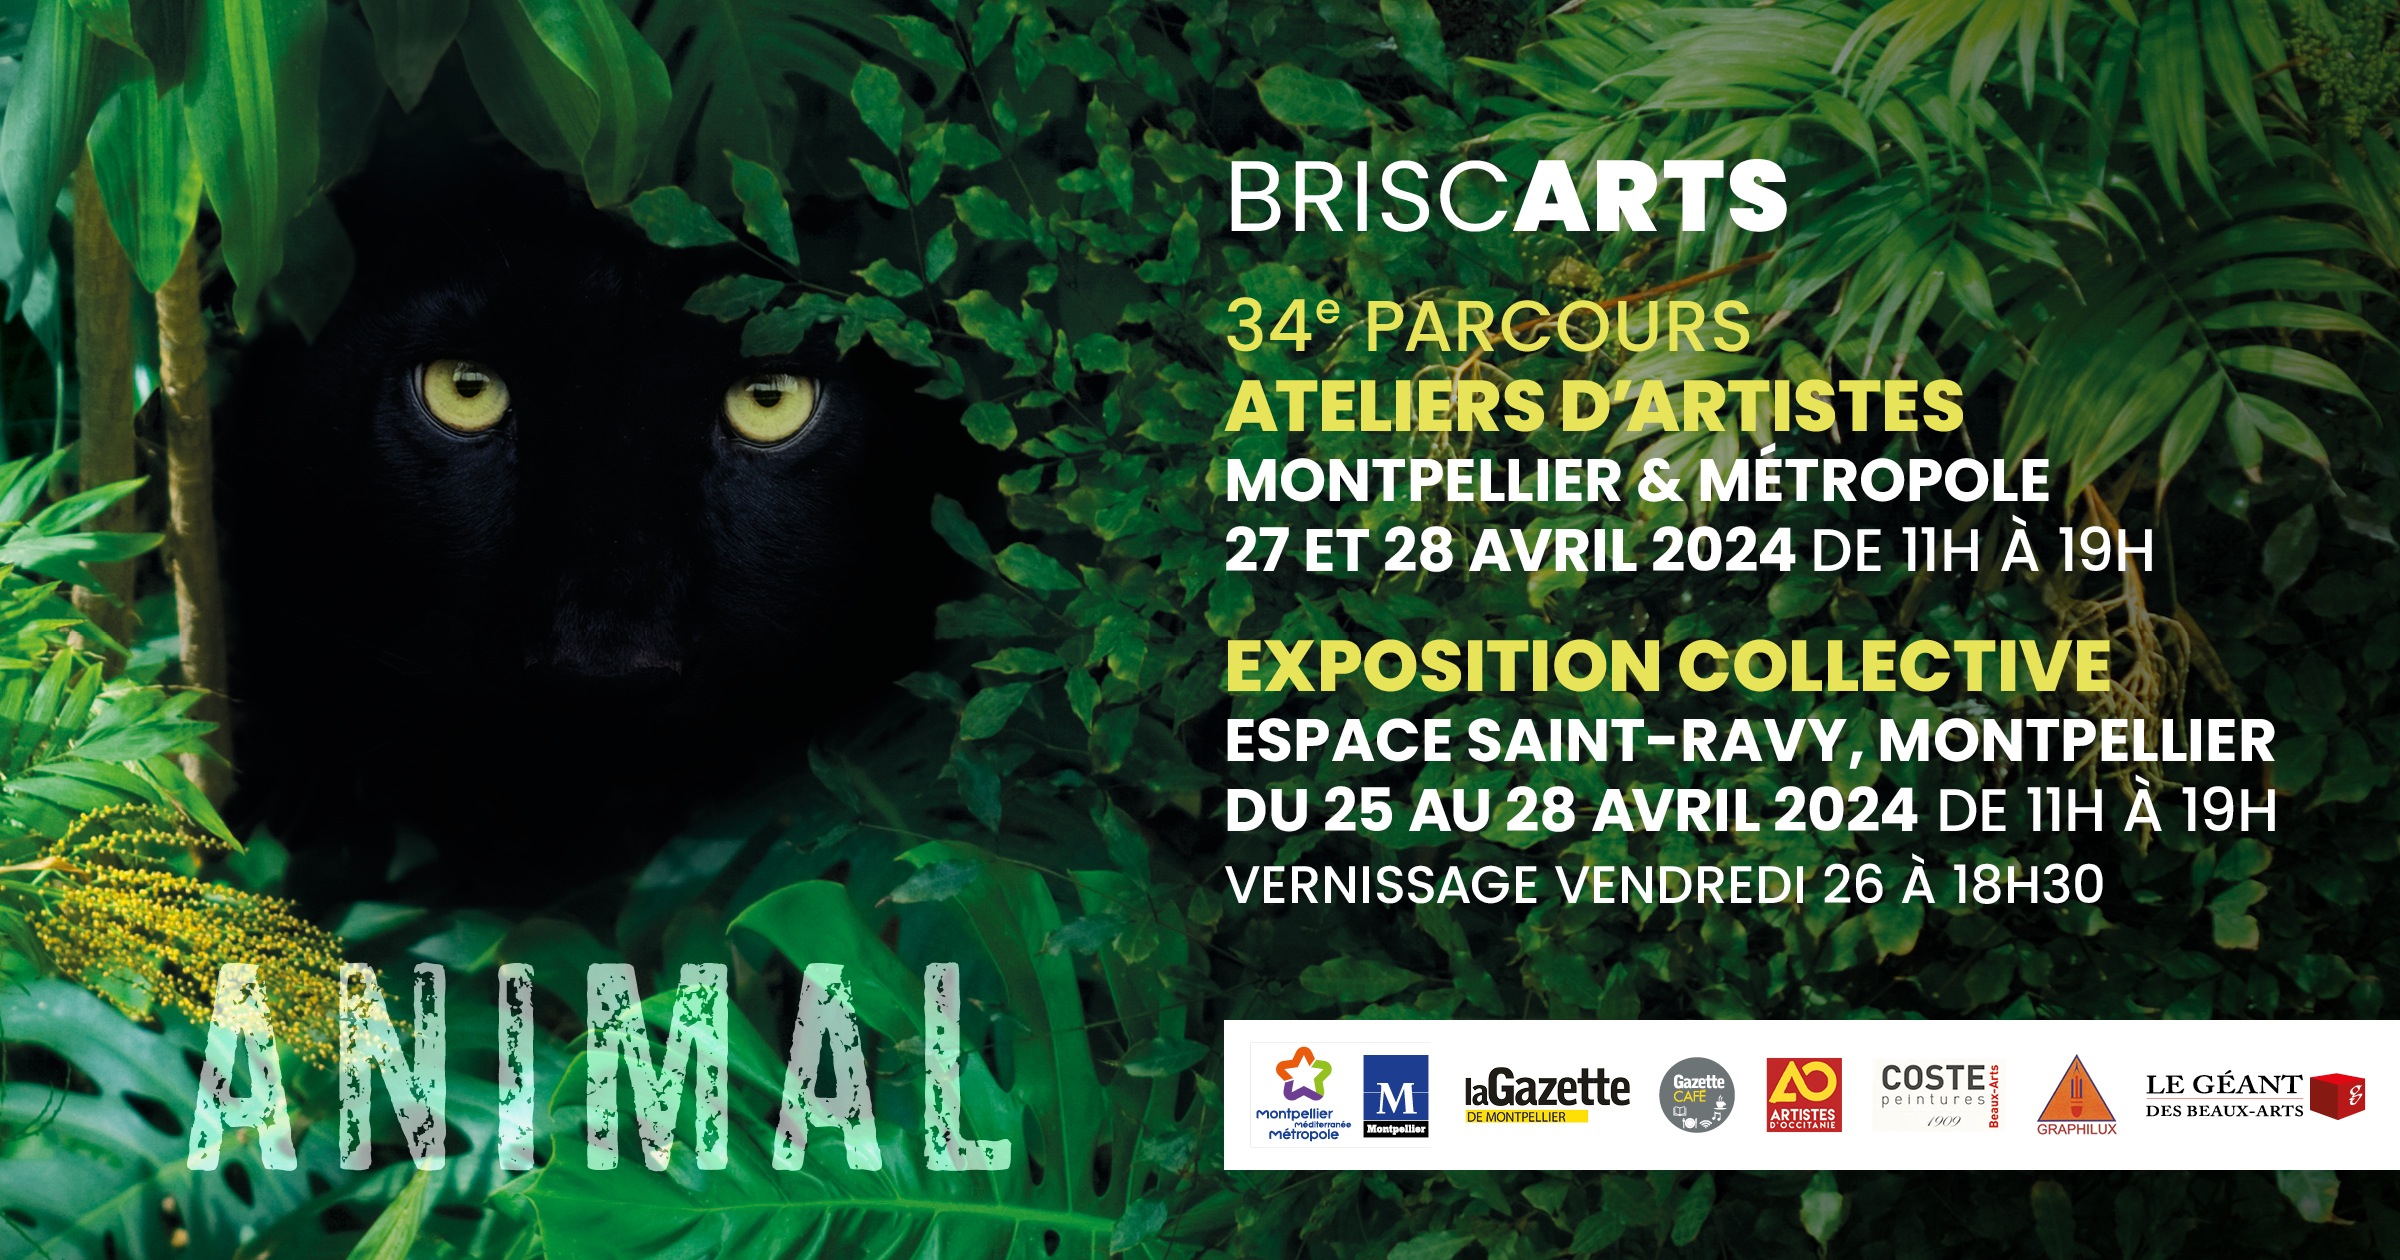 Affiche de l'exposition ANIMAL des Briscarts, 34e parcours d'ateliers d'artistes de Montpellier